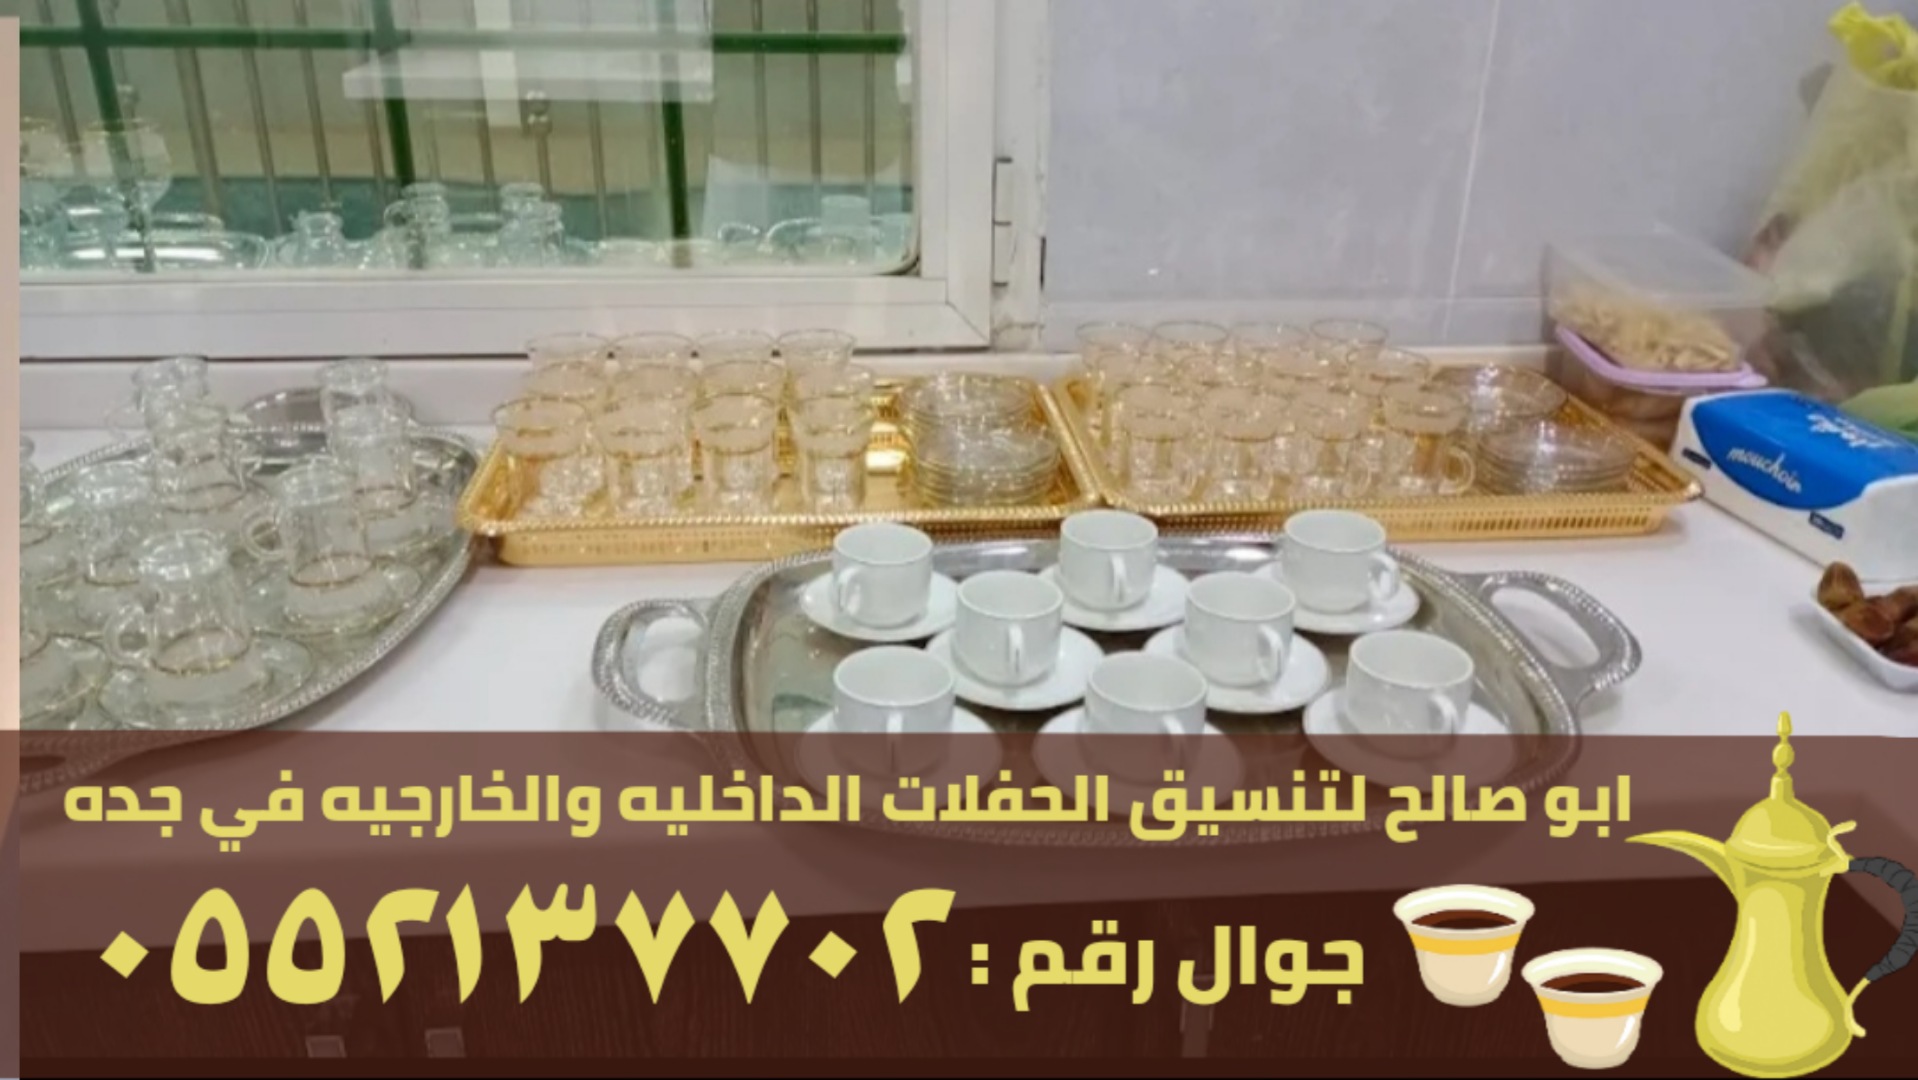 صبابين قهوة في جدة و صبابات قهوه , 0552137702 P_2371njiat6